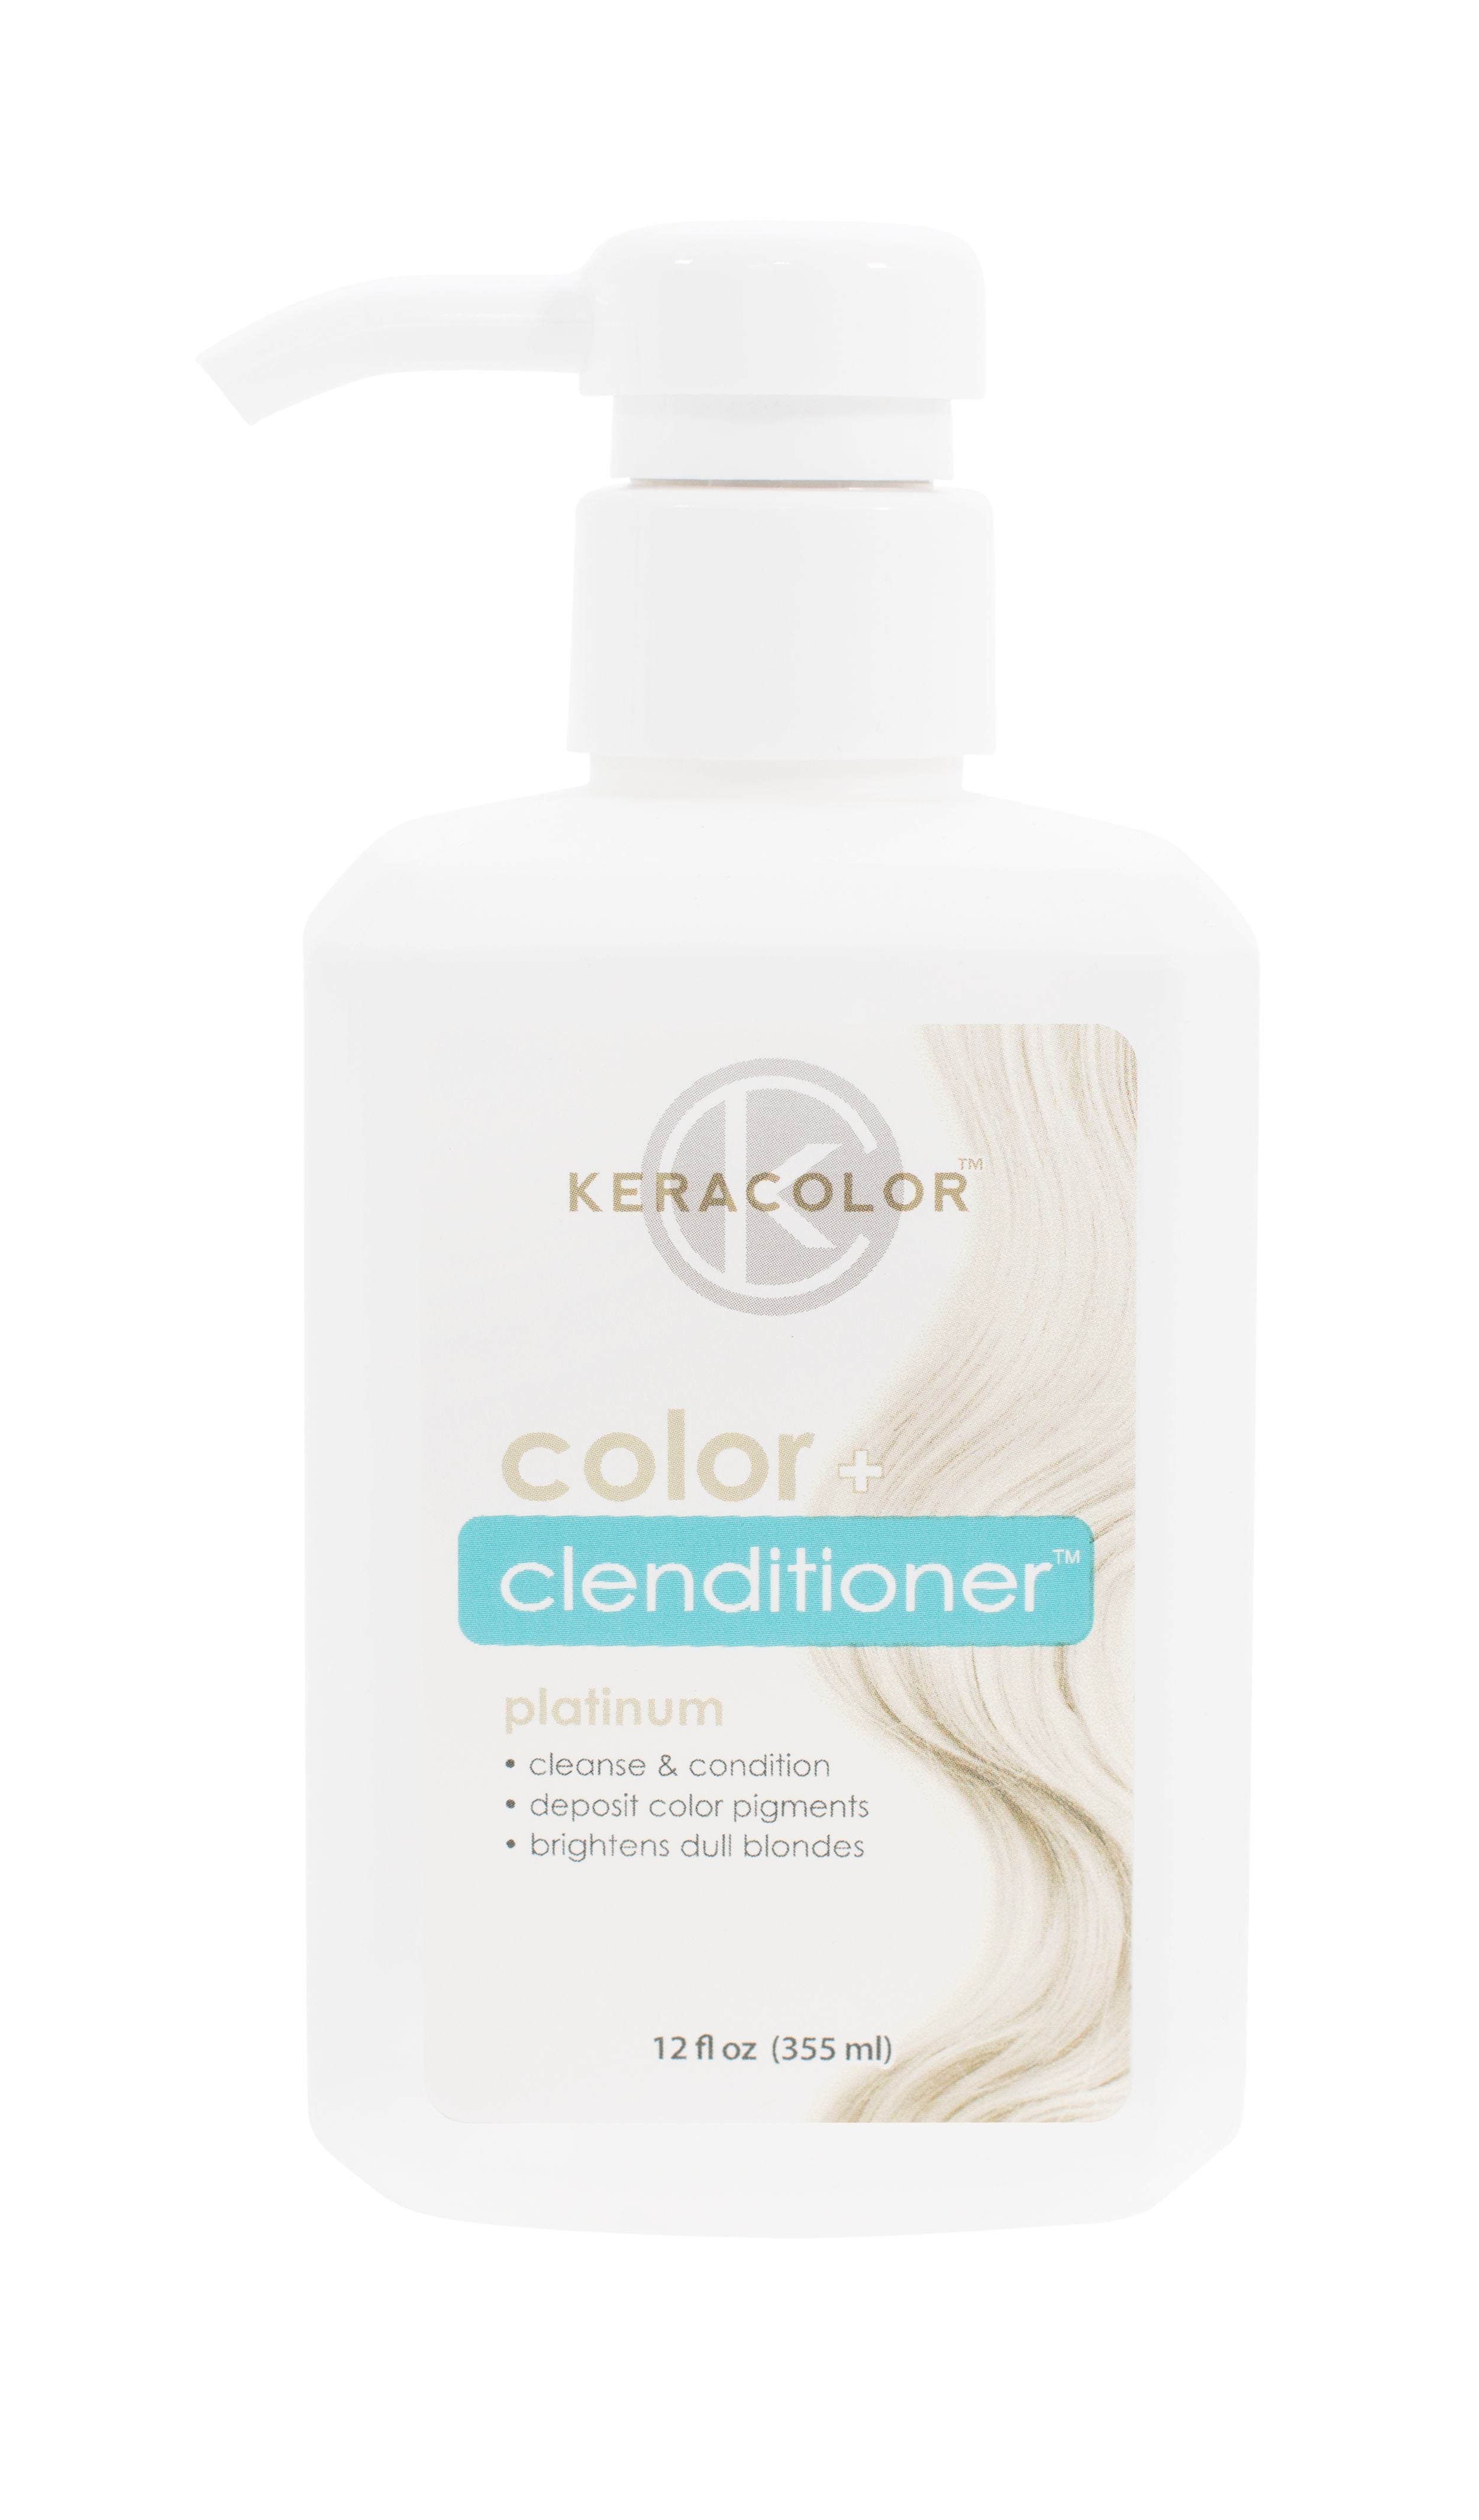 Keracolor Colour + Clenditioner Platinum  - 355ml